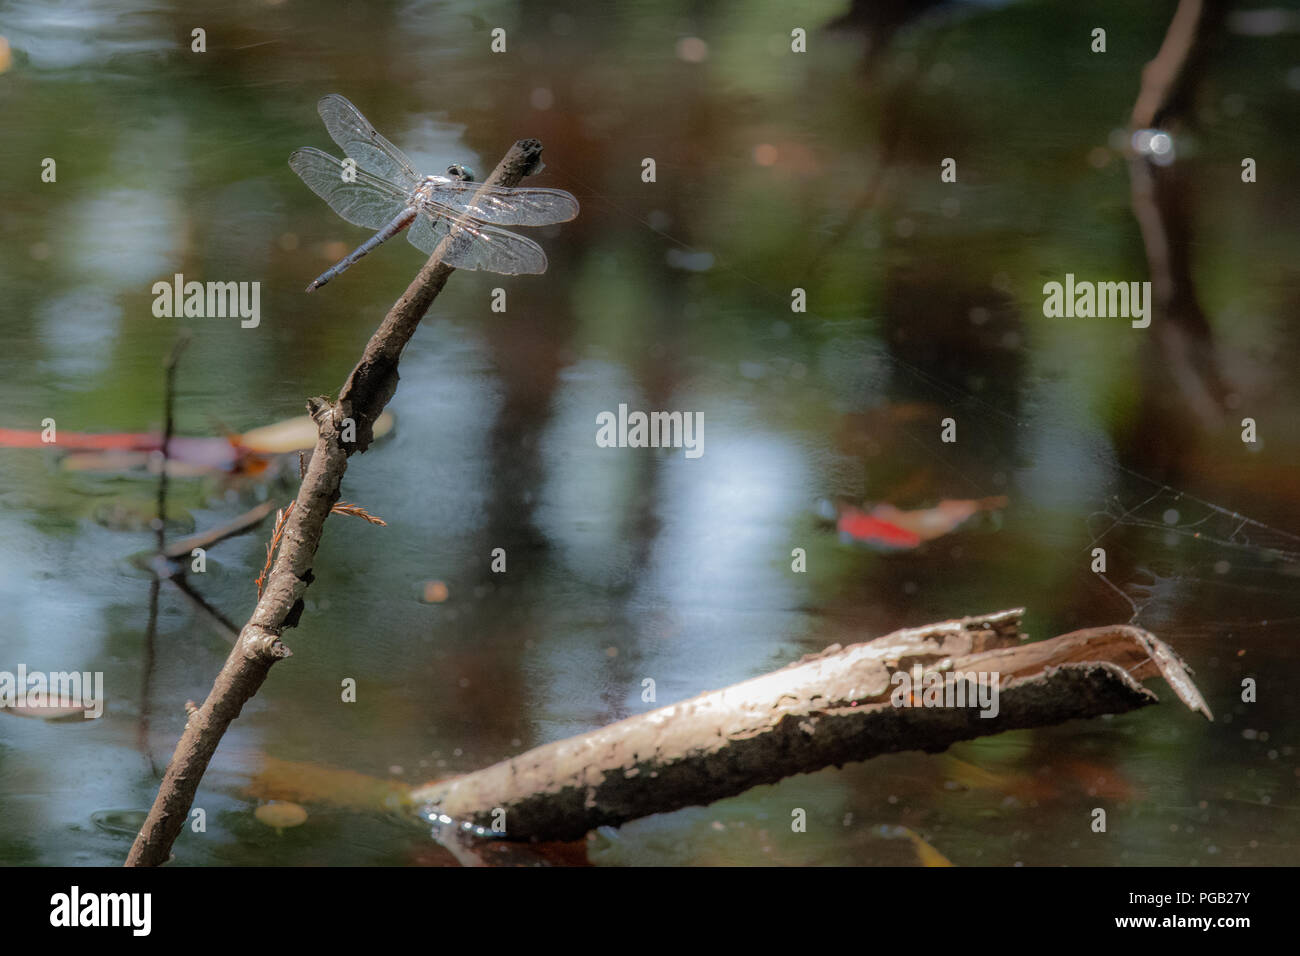 Eine Libelle ruht auf einem Stick in einem schönen in North Carolina Usa Sumpf - noch Brackwasser mit frühen Herbst Blätter im Hintergrund Stockfoto